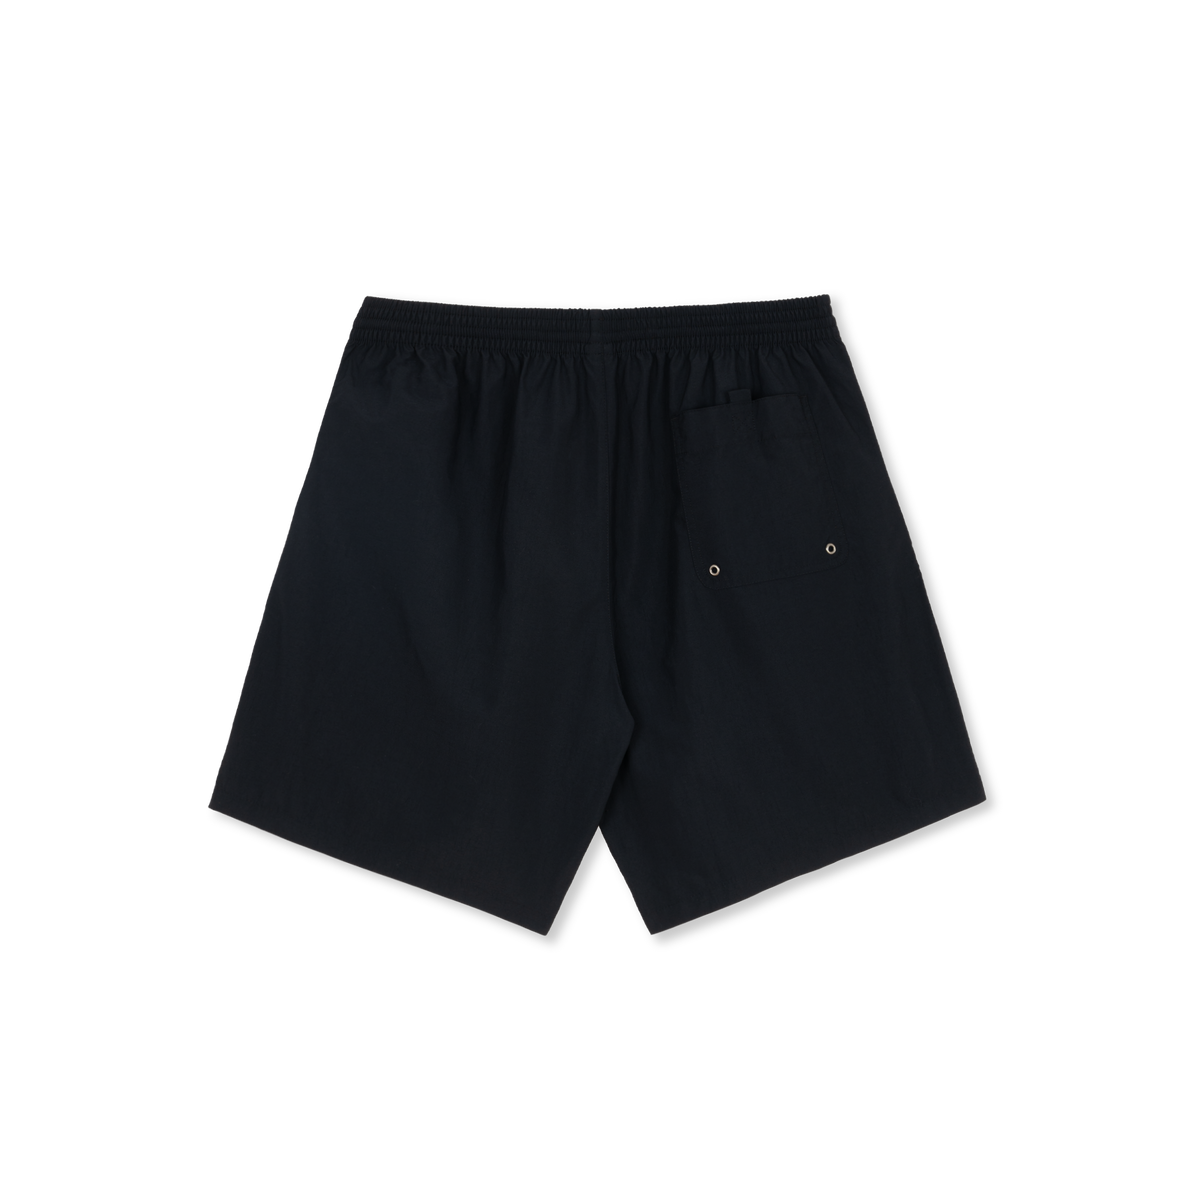 Polar Skate Co Square Stripe Swim Shorts - Black / Jade Green